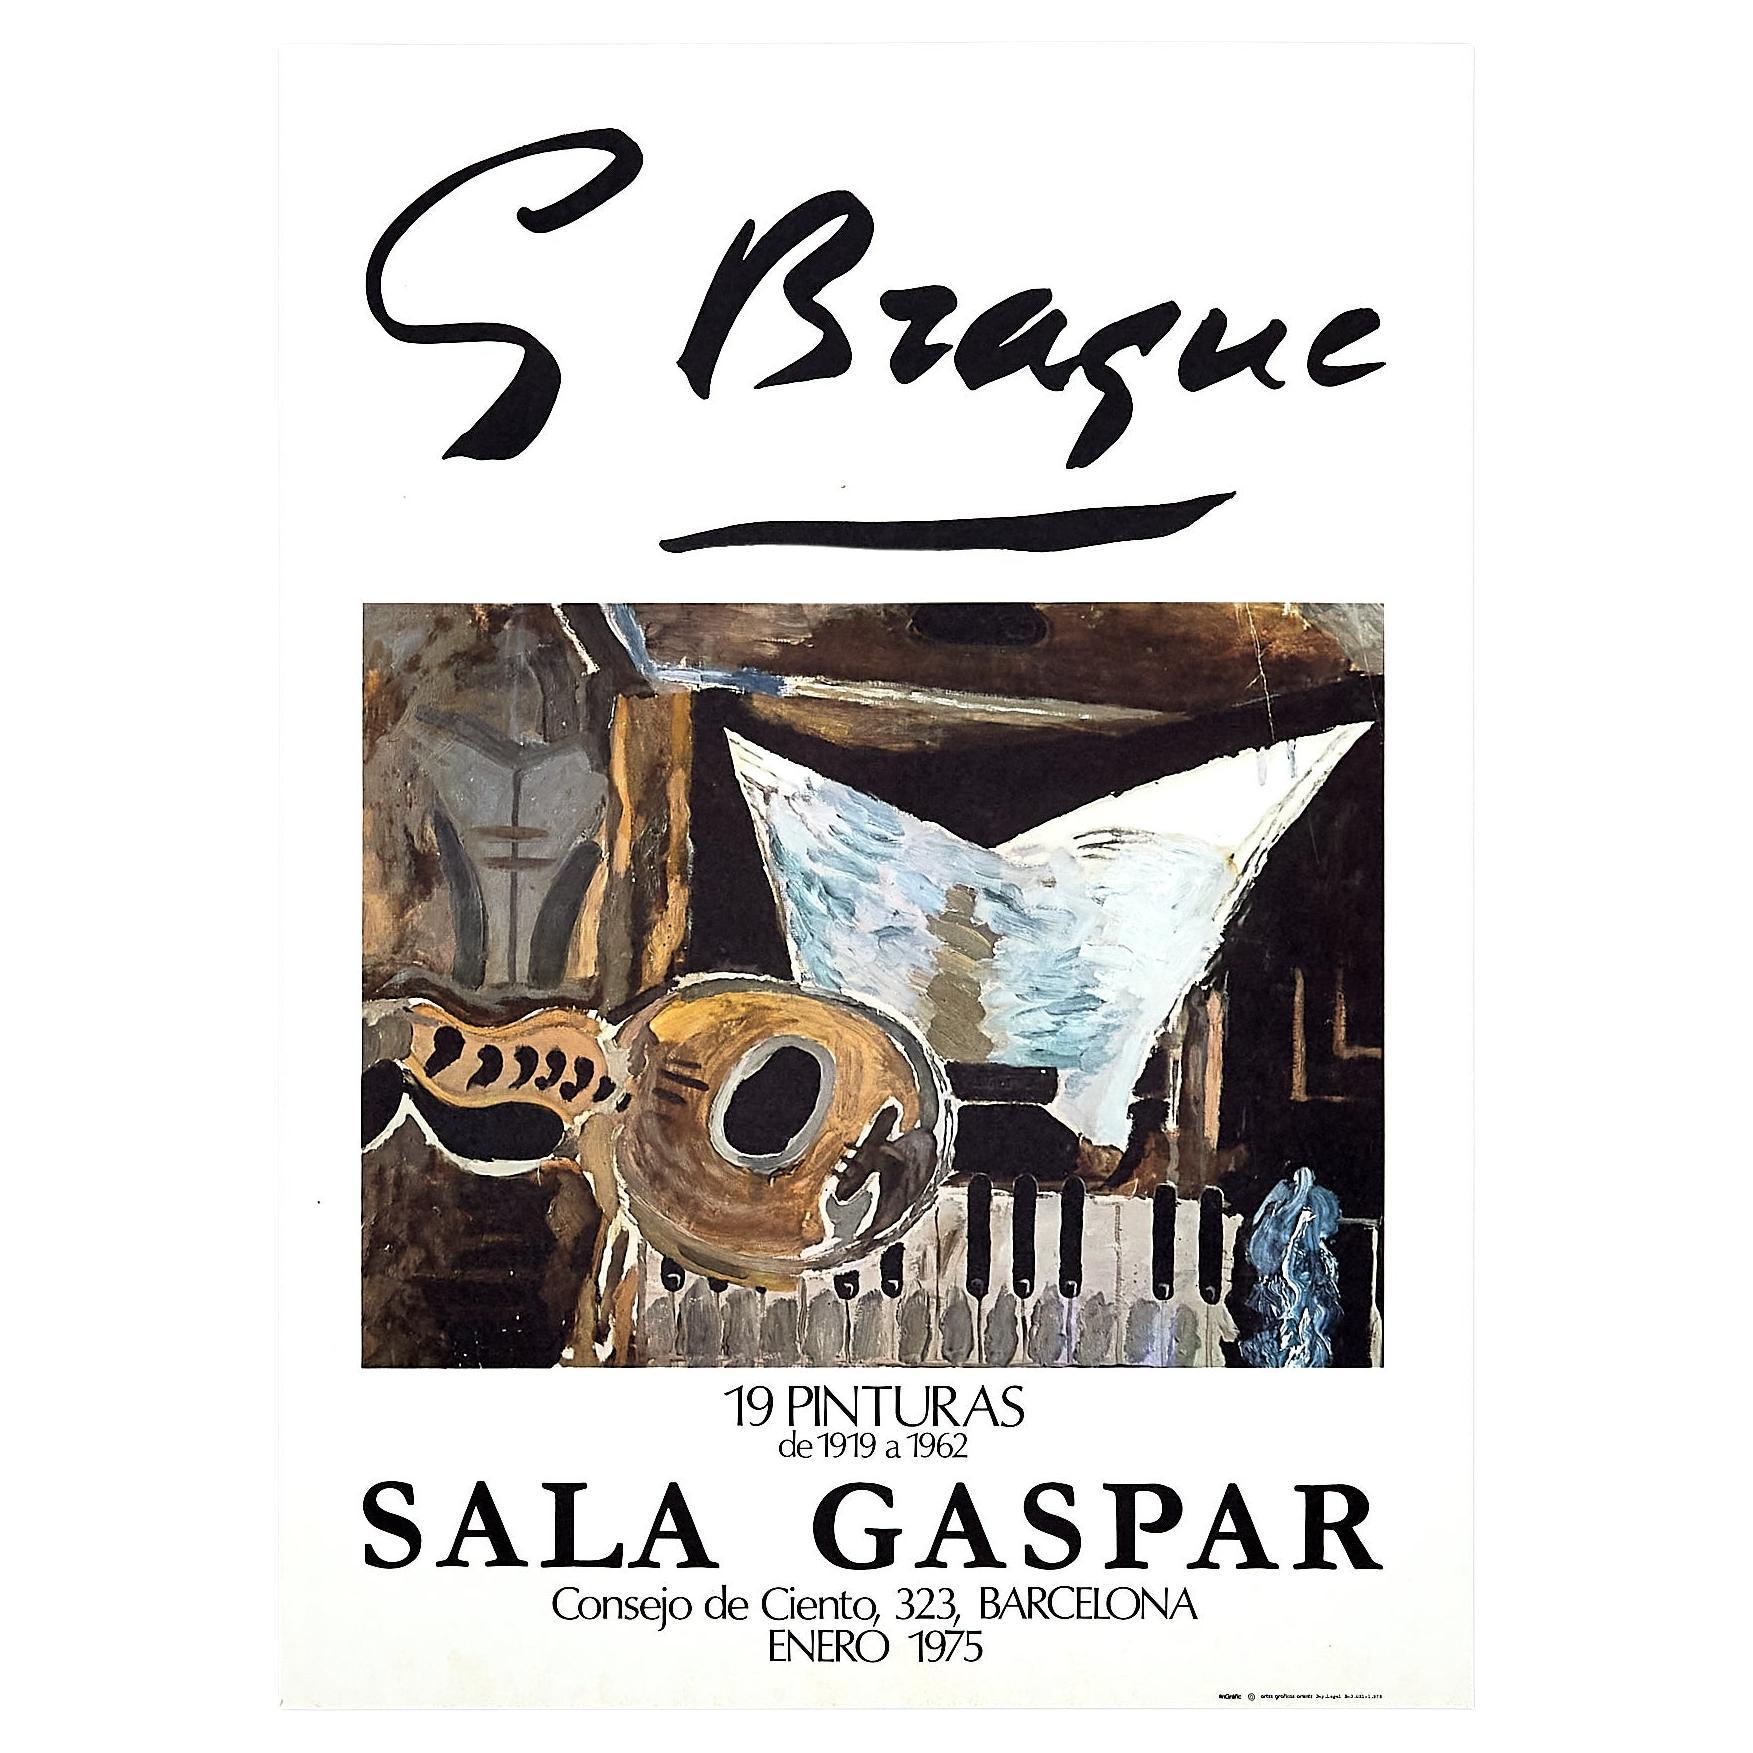 Plakat für Gaspar Room von Georges Braque, ca. 1975.